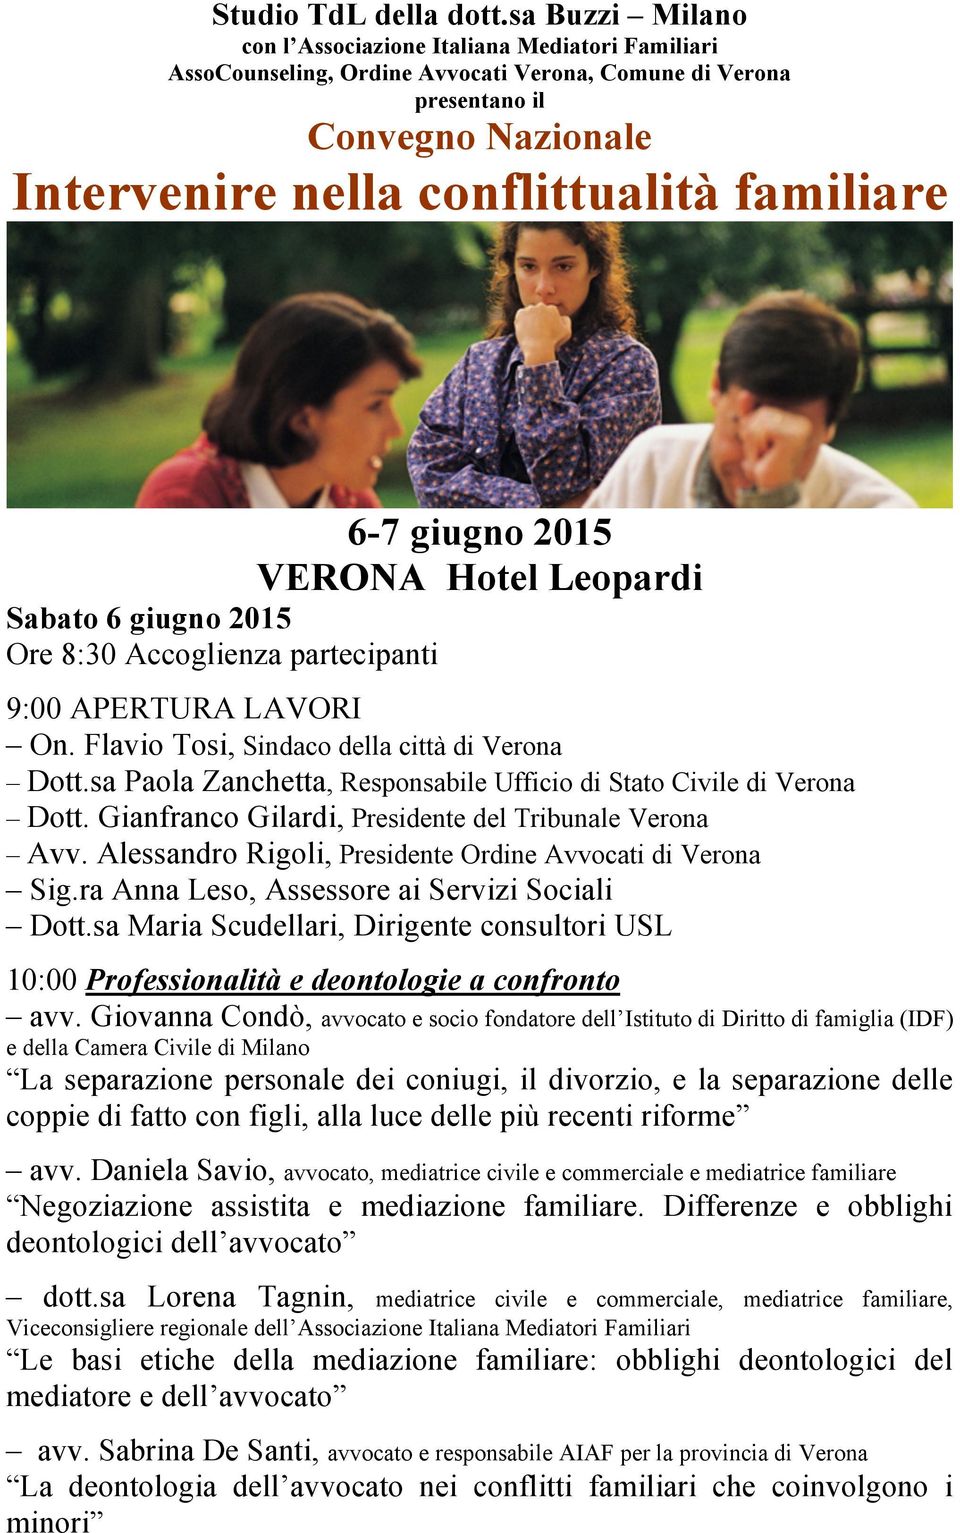 6-7 giugno 2015 VERONA Hotel Leopardi Sabato 6 giugno 2015 Ore 8:30 Accoglienza partecipanti 9:00 APERTURA LAVORI On. Flavio Tosi, Sindaco della città di Verona Dott.